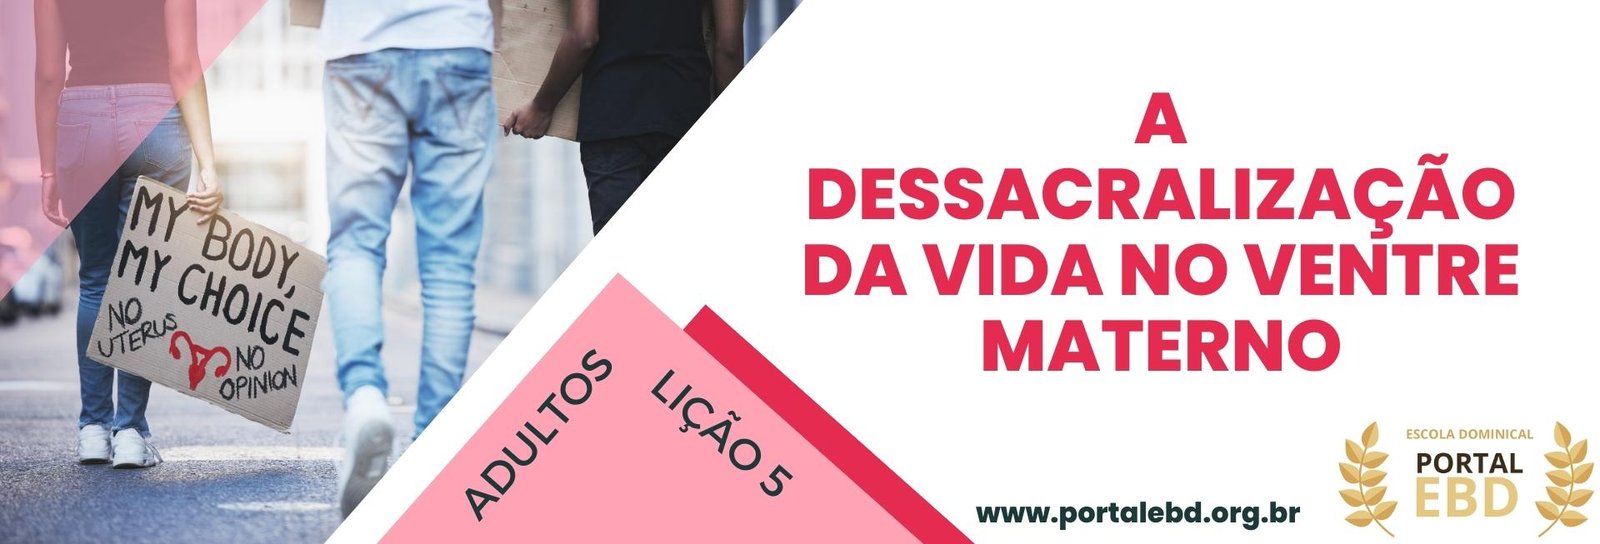 Presumir - Dicio, Dicionário Online de Português